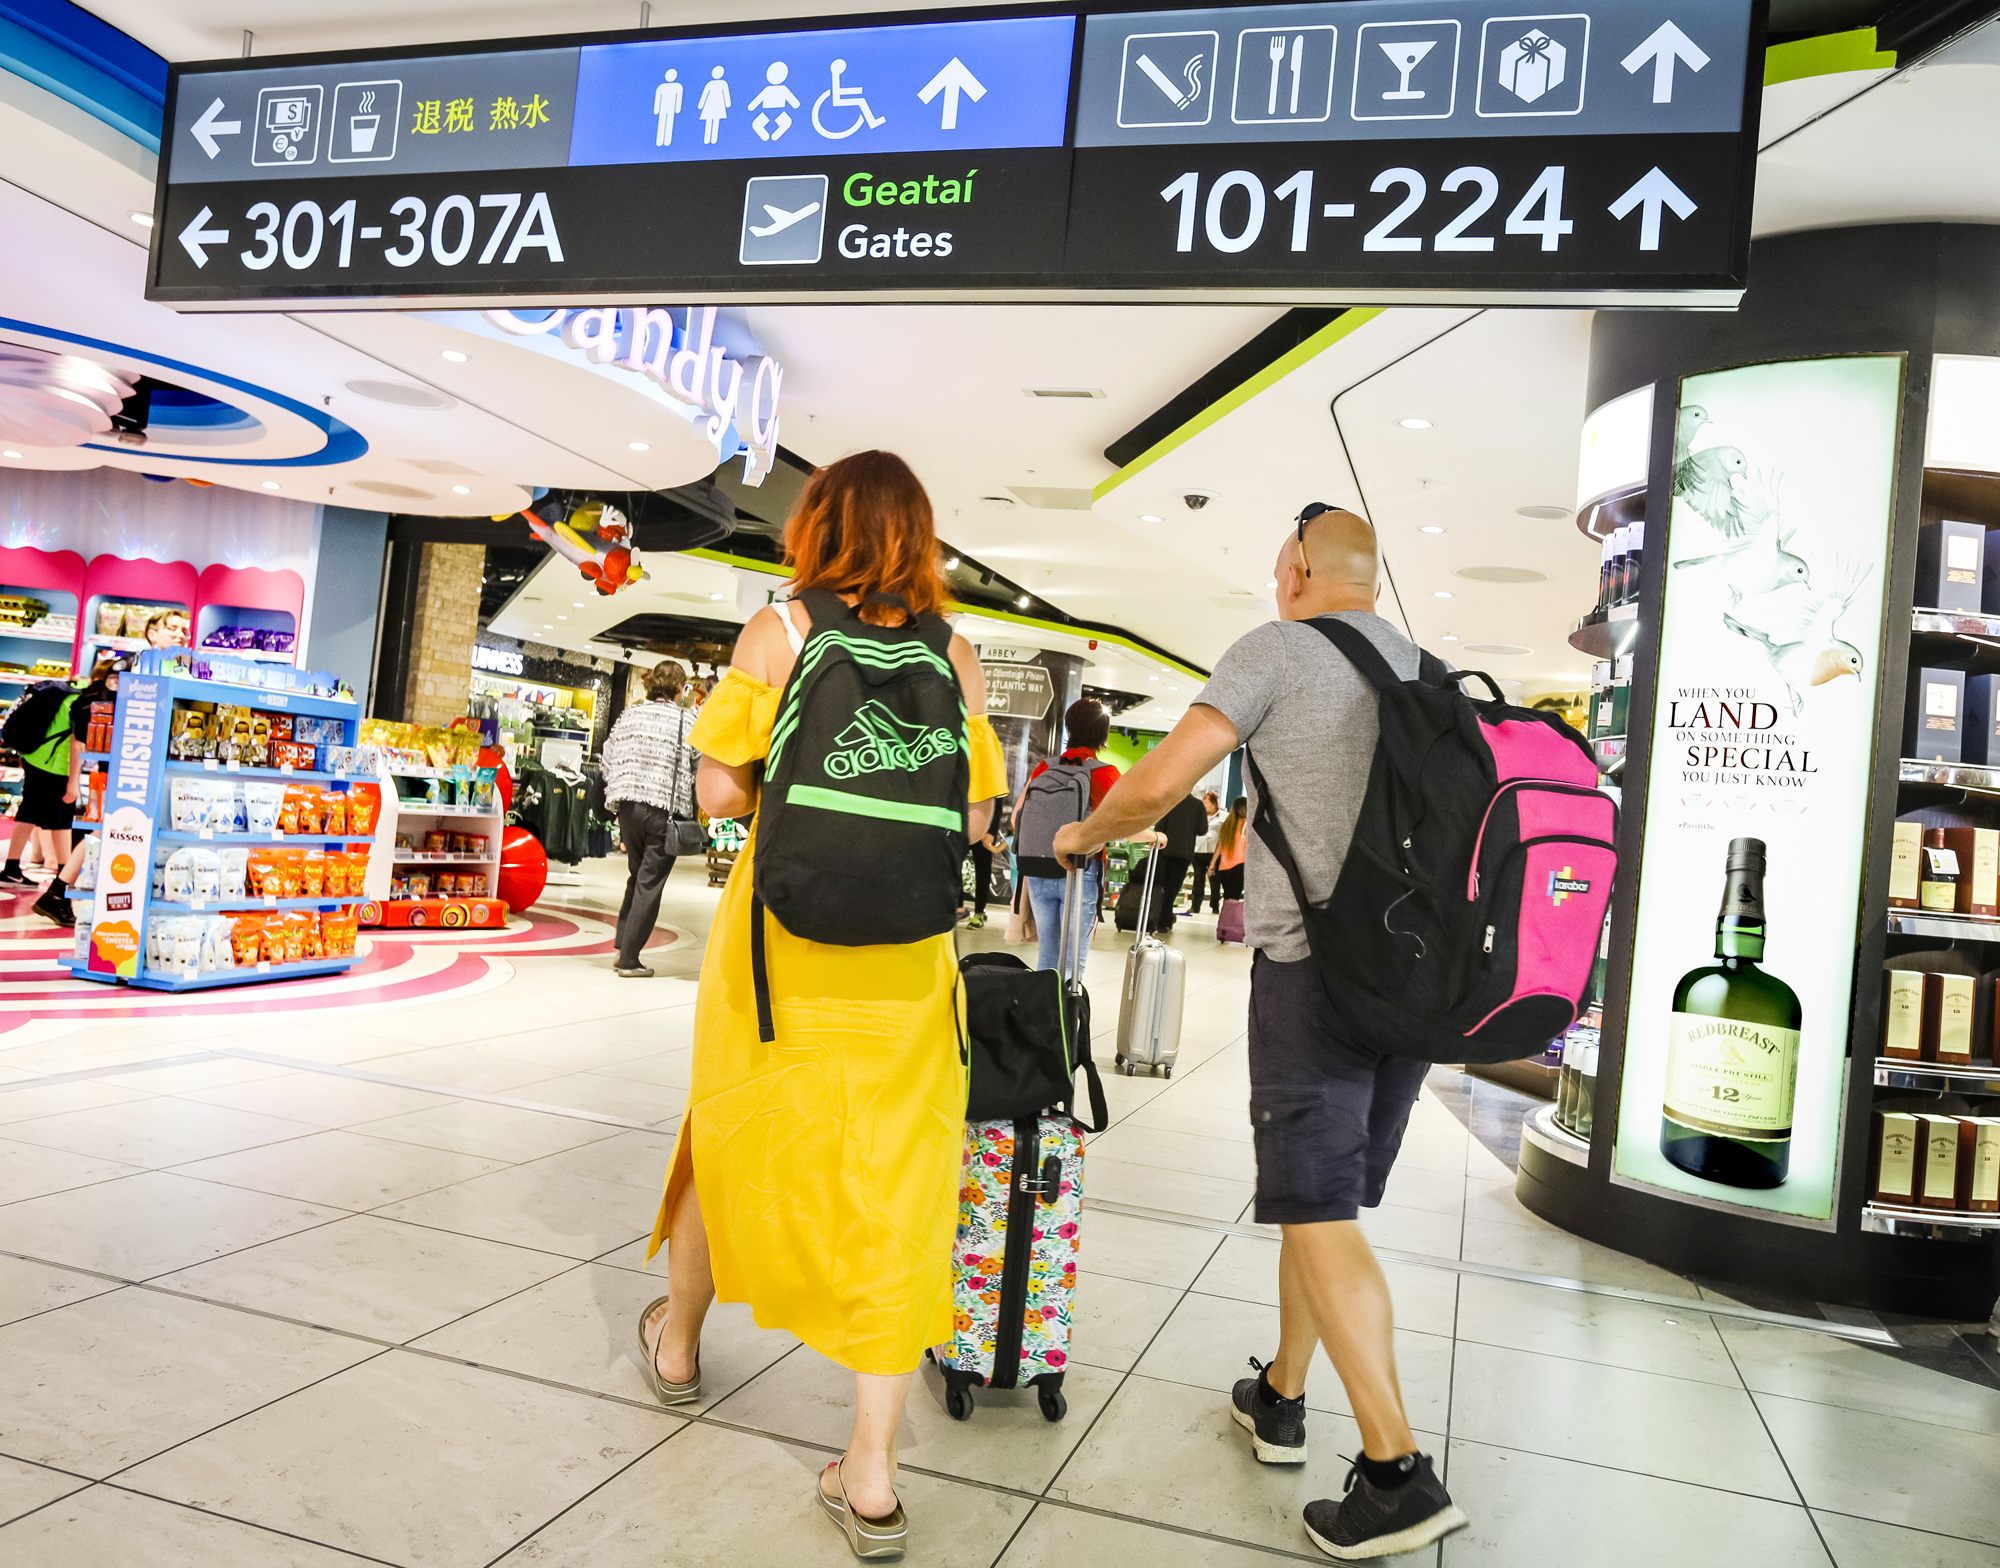 Passengers walk through The Loop in Terminal 1 Departures